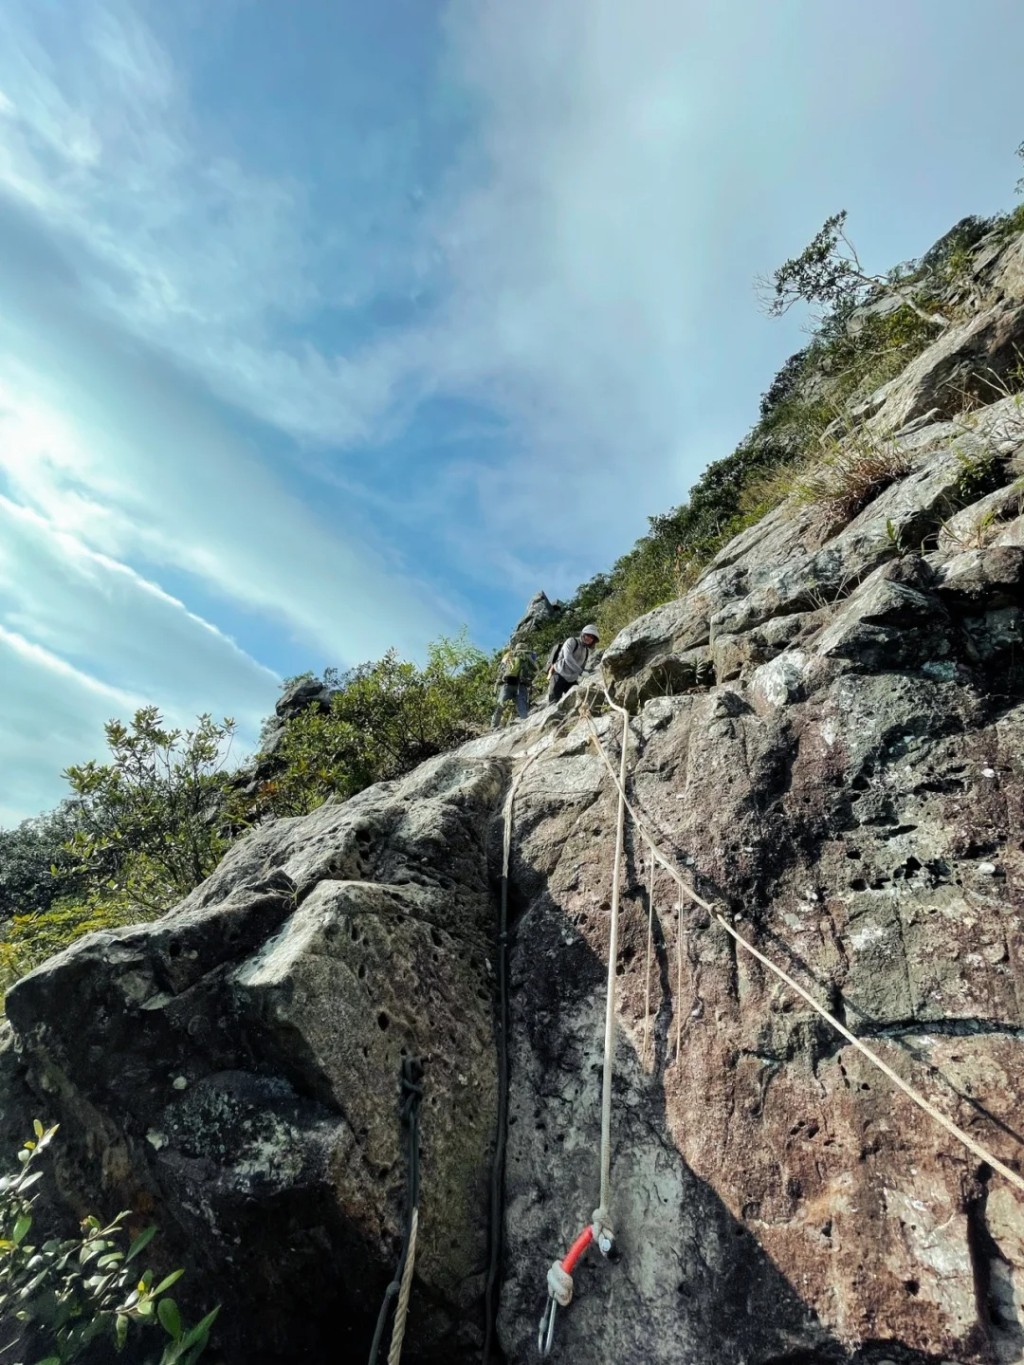 排牙山龜仙石是深圳許多爬山客的挑戰目標。小紅書